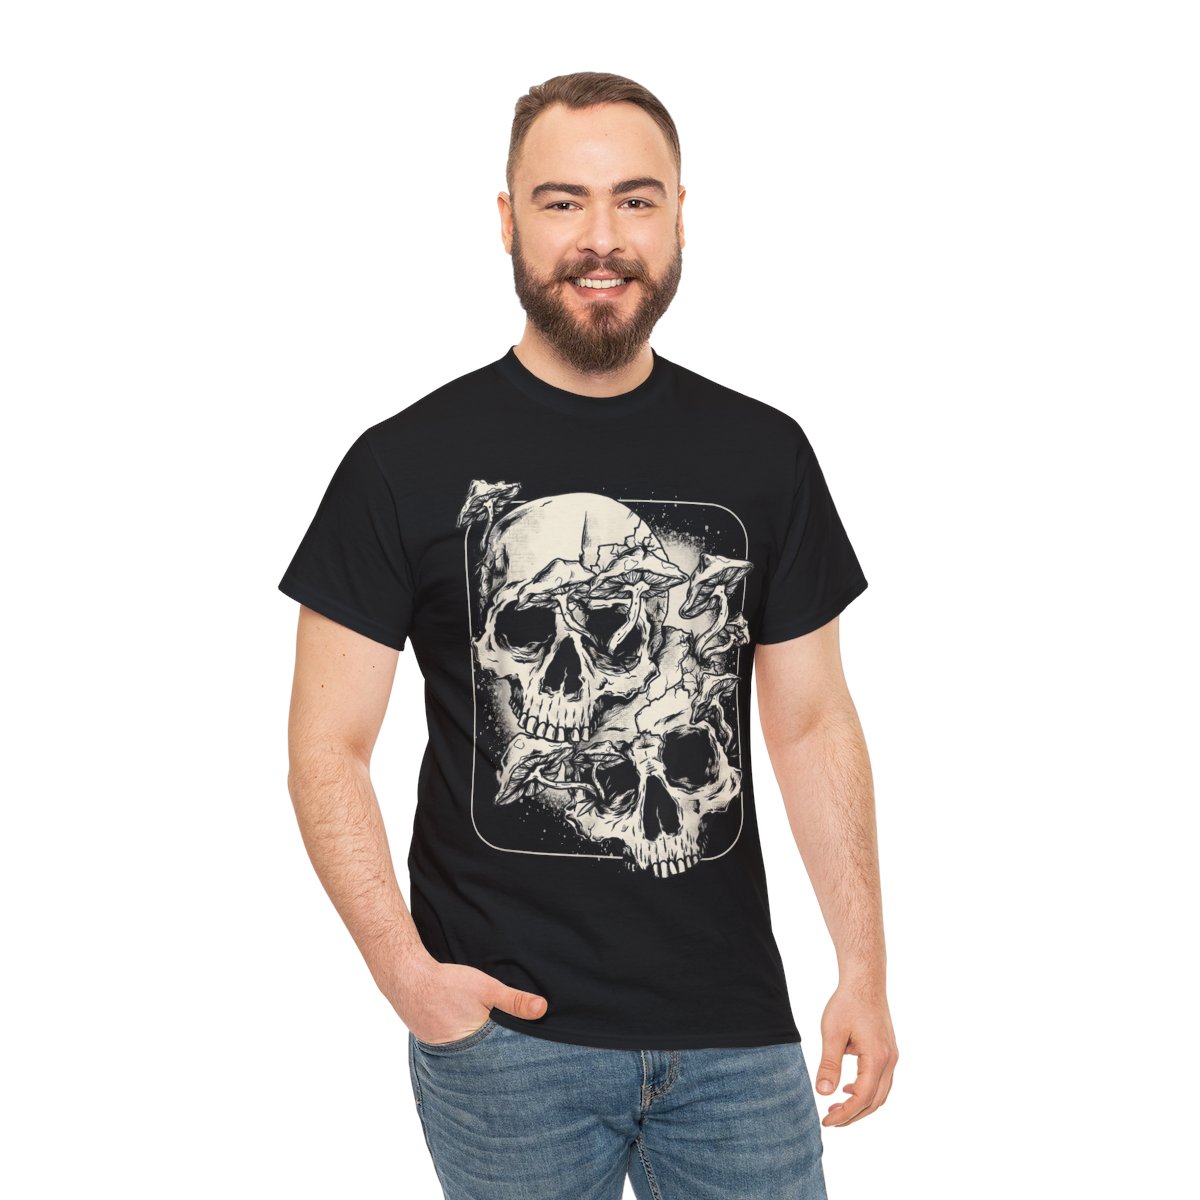 Skull Morel Mushrooms, Mycologist Goth Mushroom Art Graphic T-Shirt